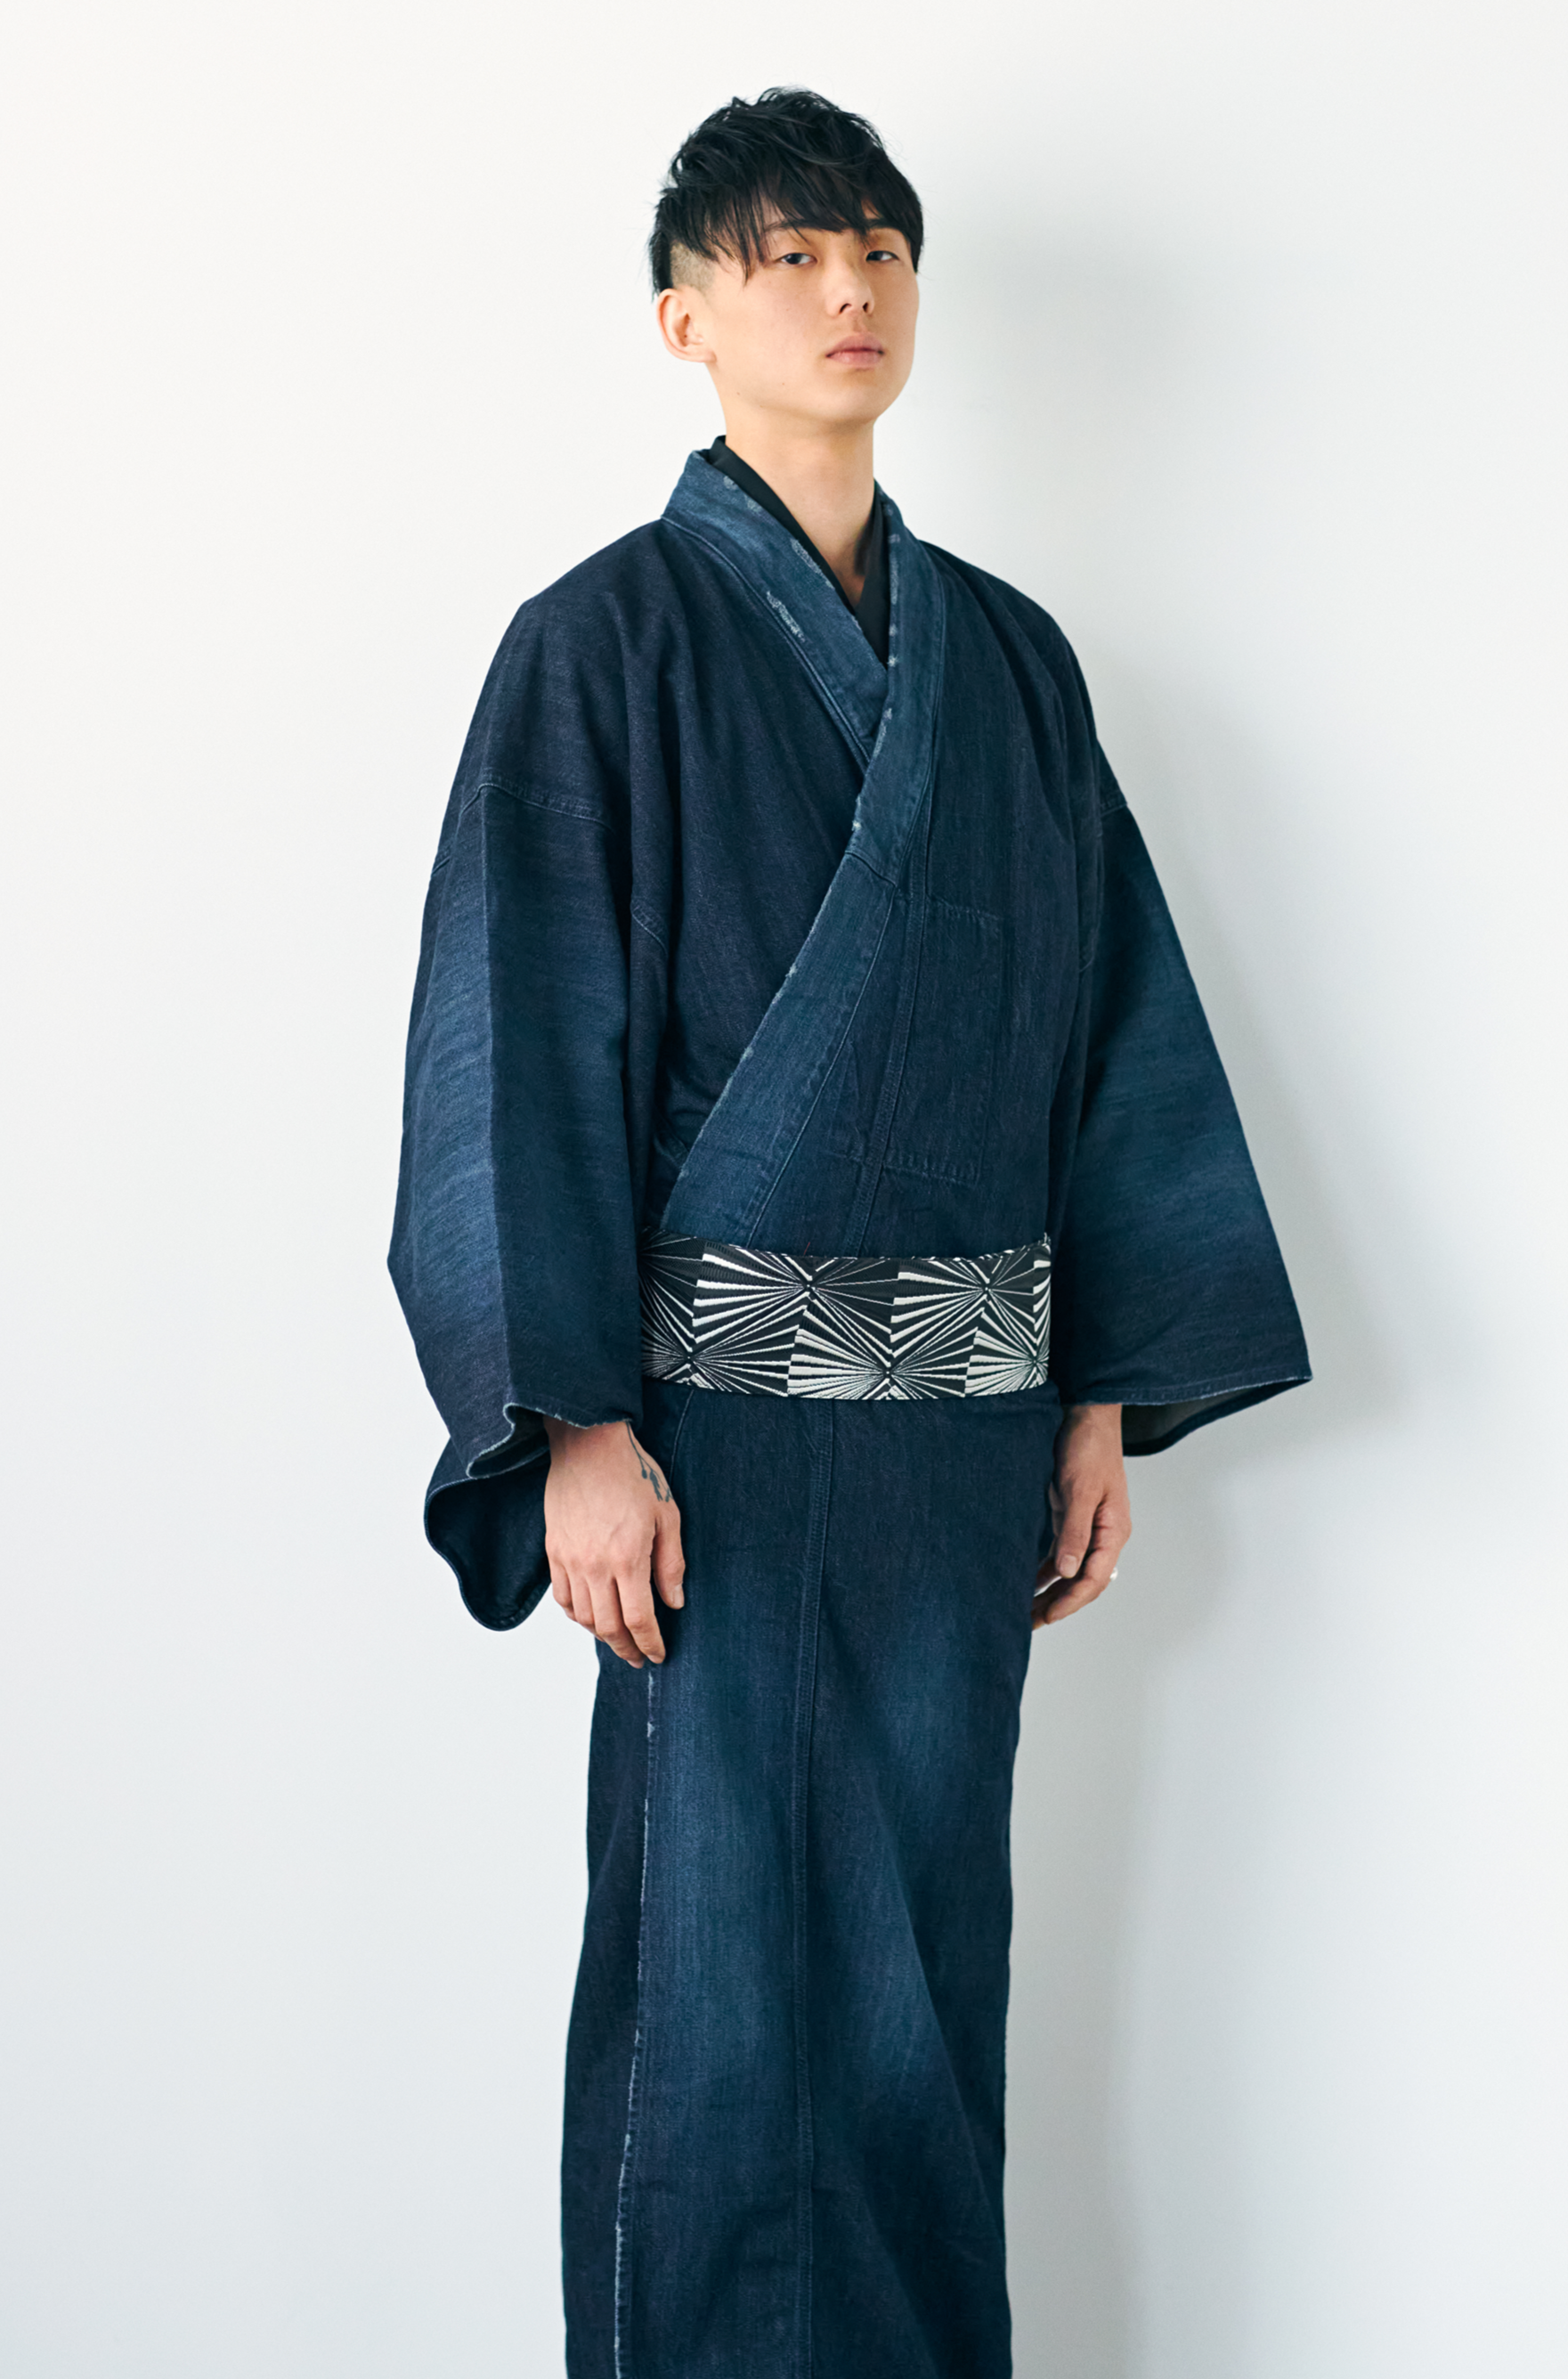 KAPUKI original denim kimono 1yr men's indigo